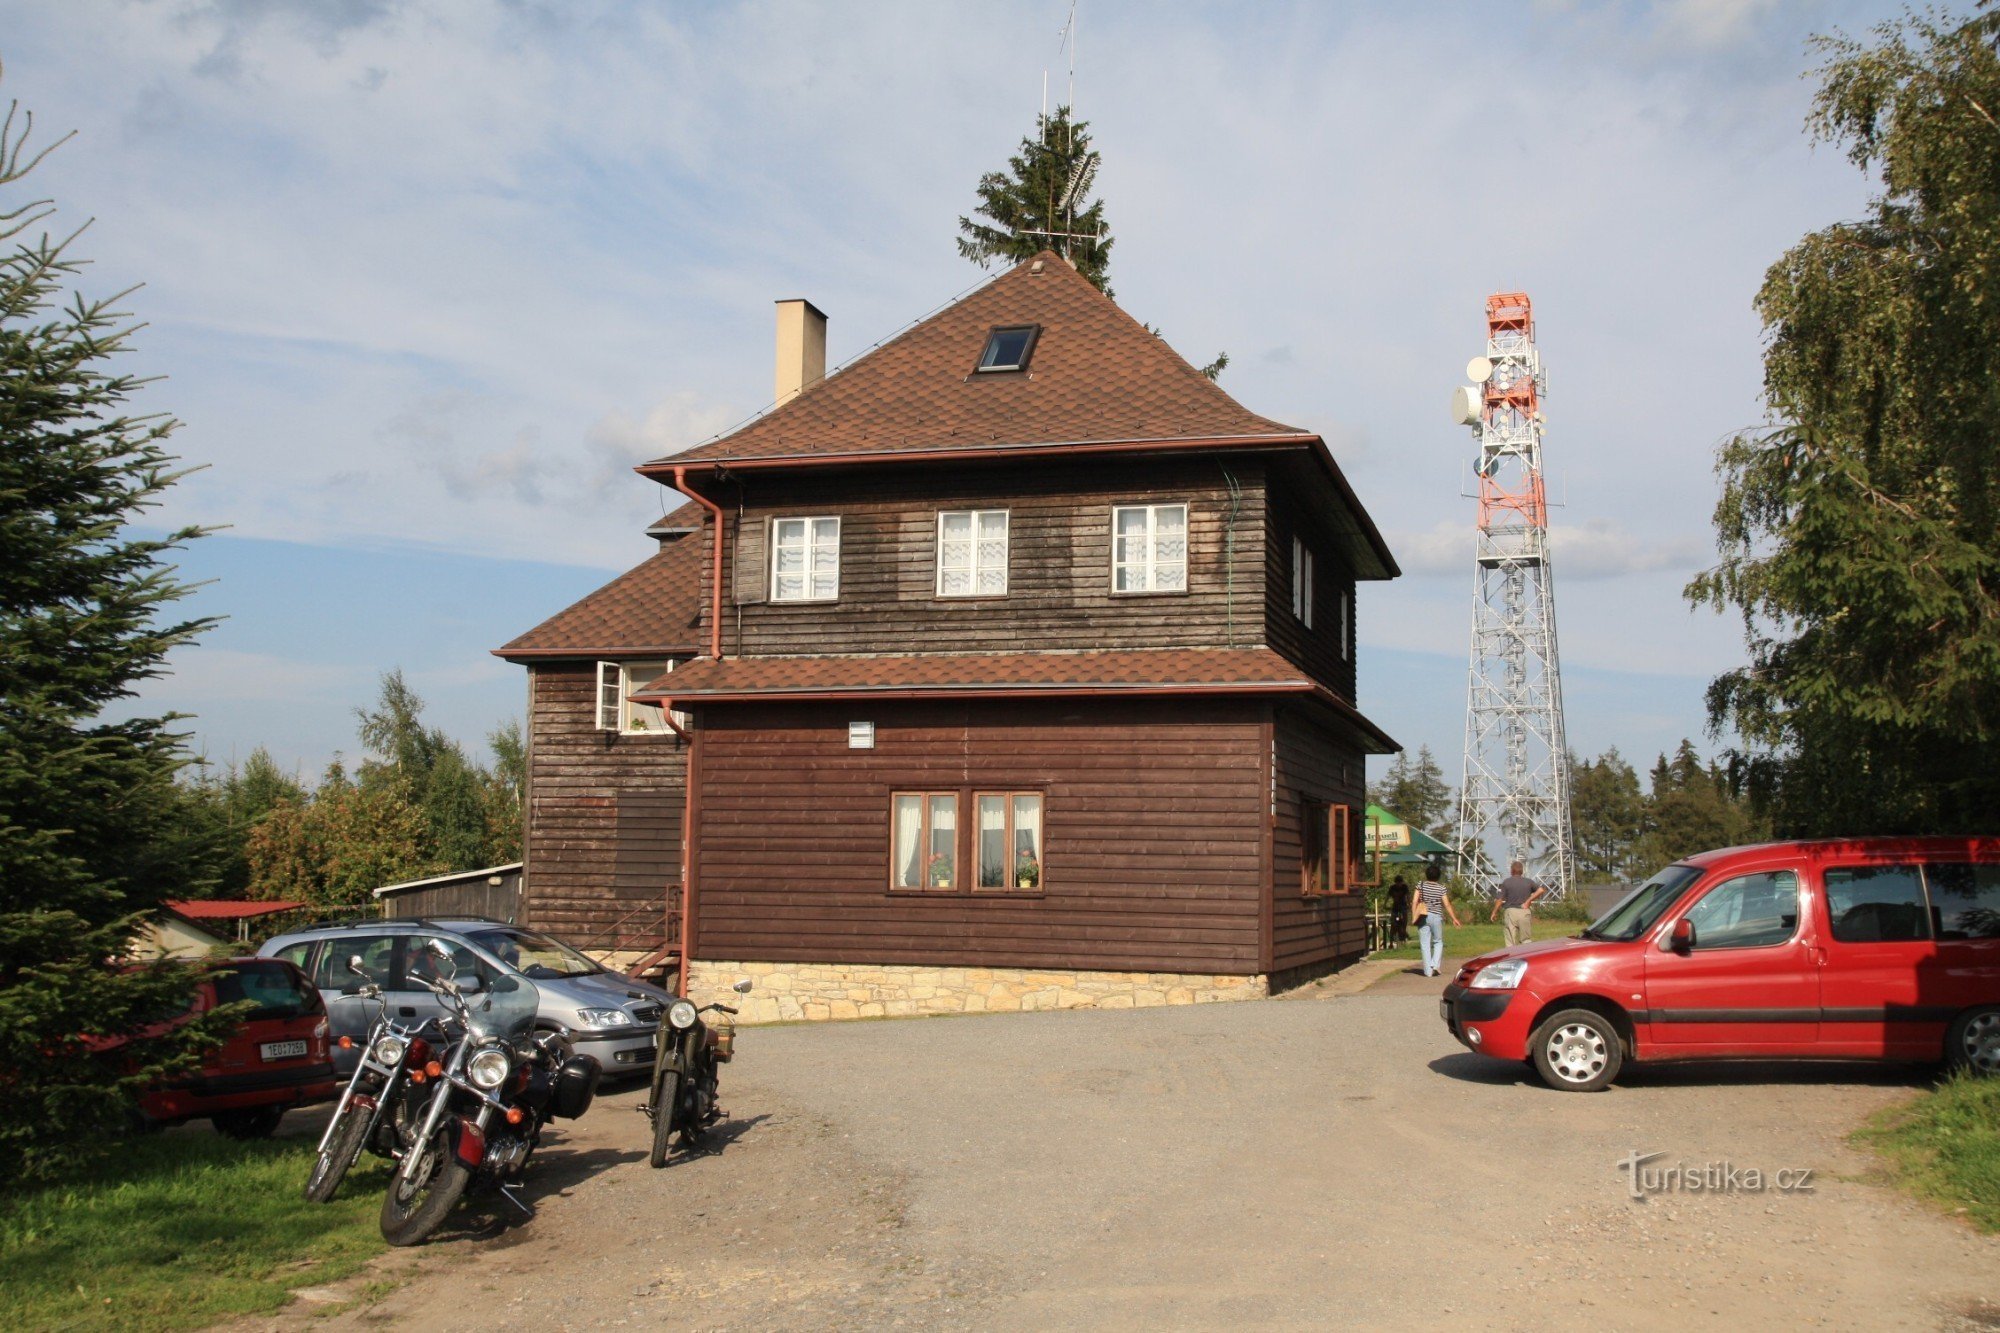 Colina Kozlov com uma cabana turística e torre de vigia